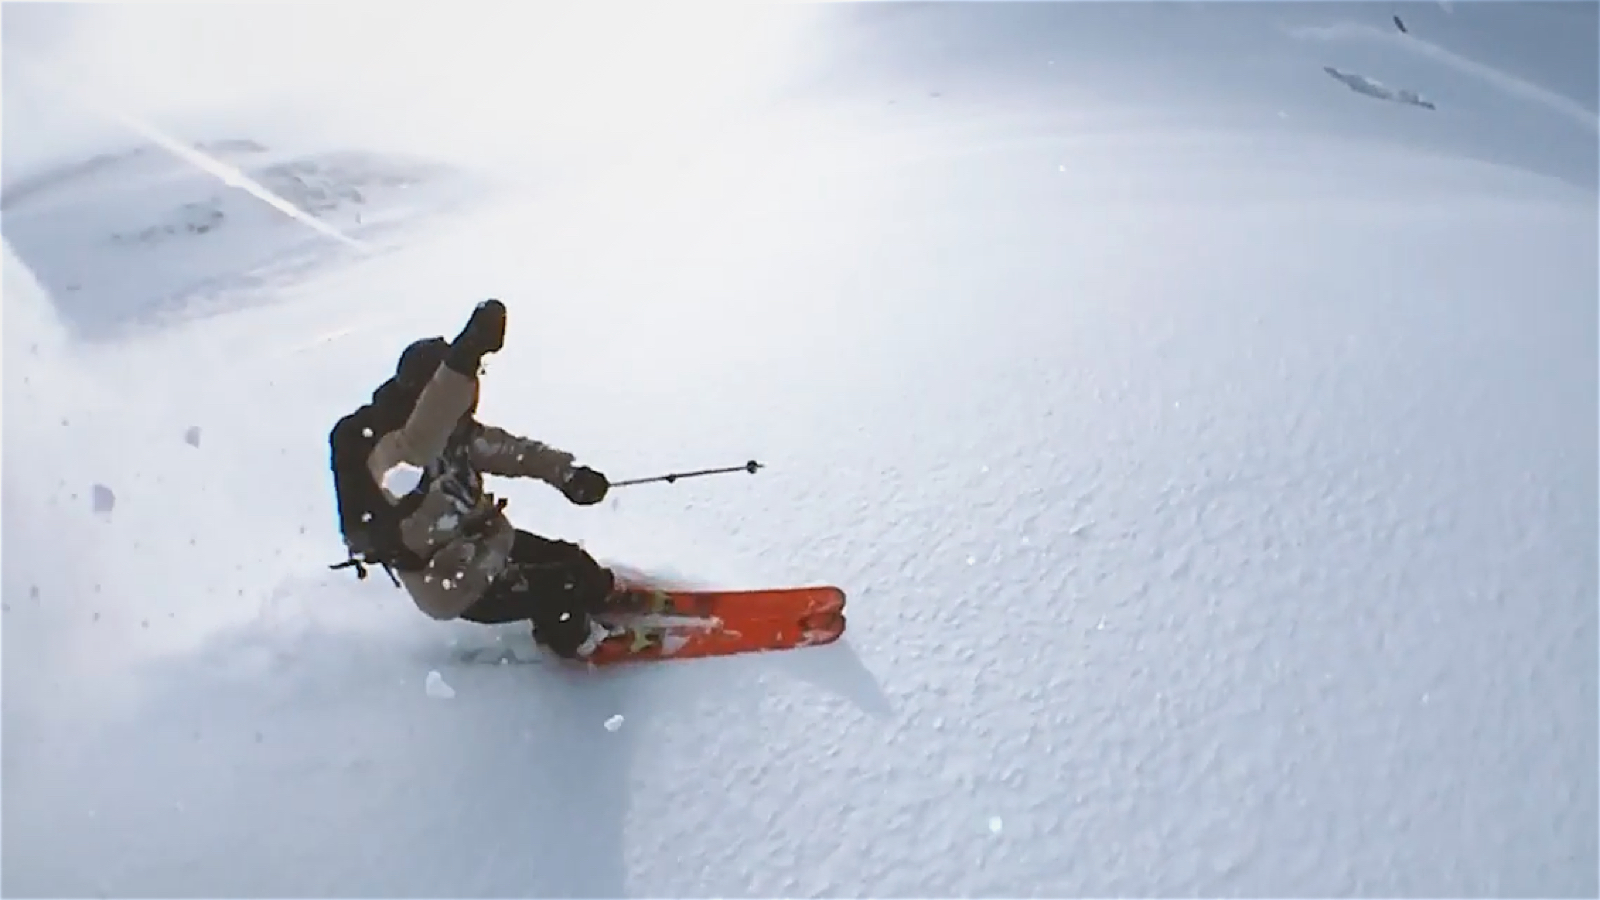 Самый оригинальный способ снять на iPhone 6 спуск на лыжах